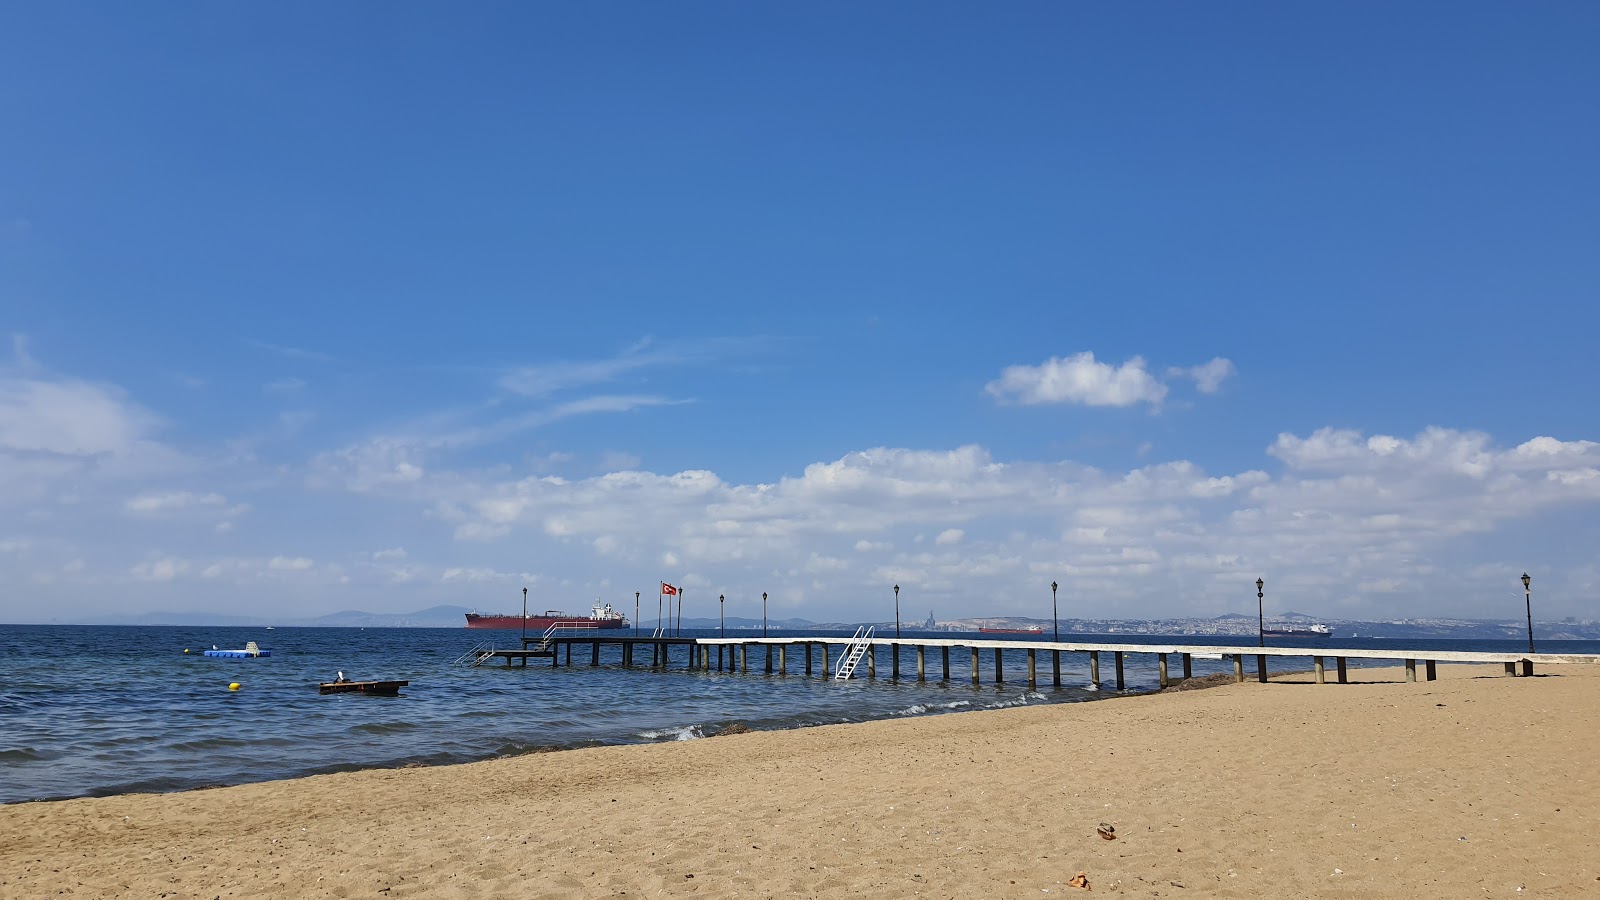 Aydınkent Plajı II'in fotoğrafı kahverengi kum yüzey ile